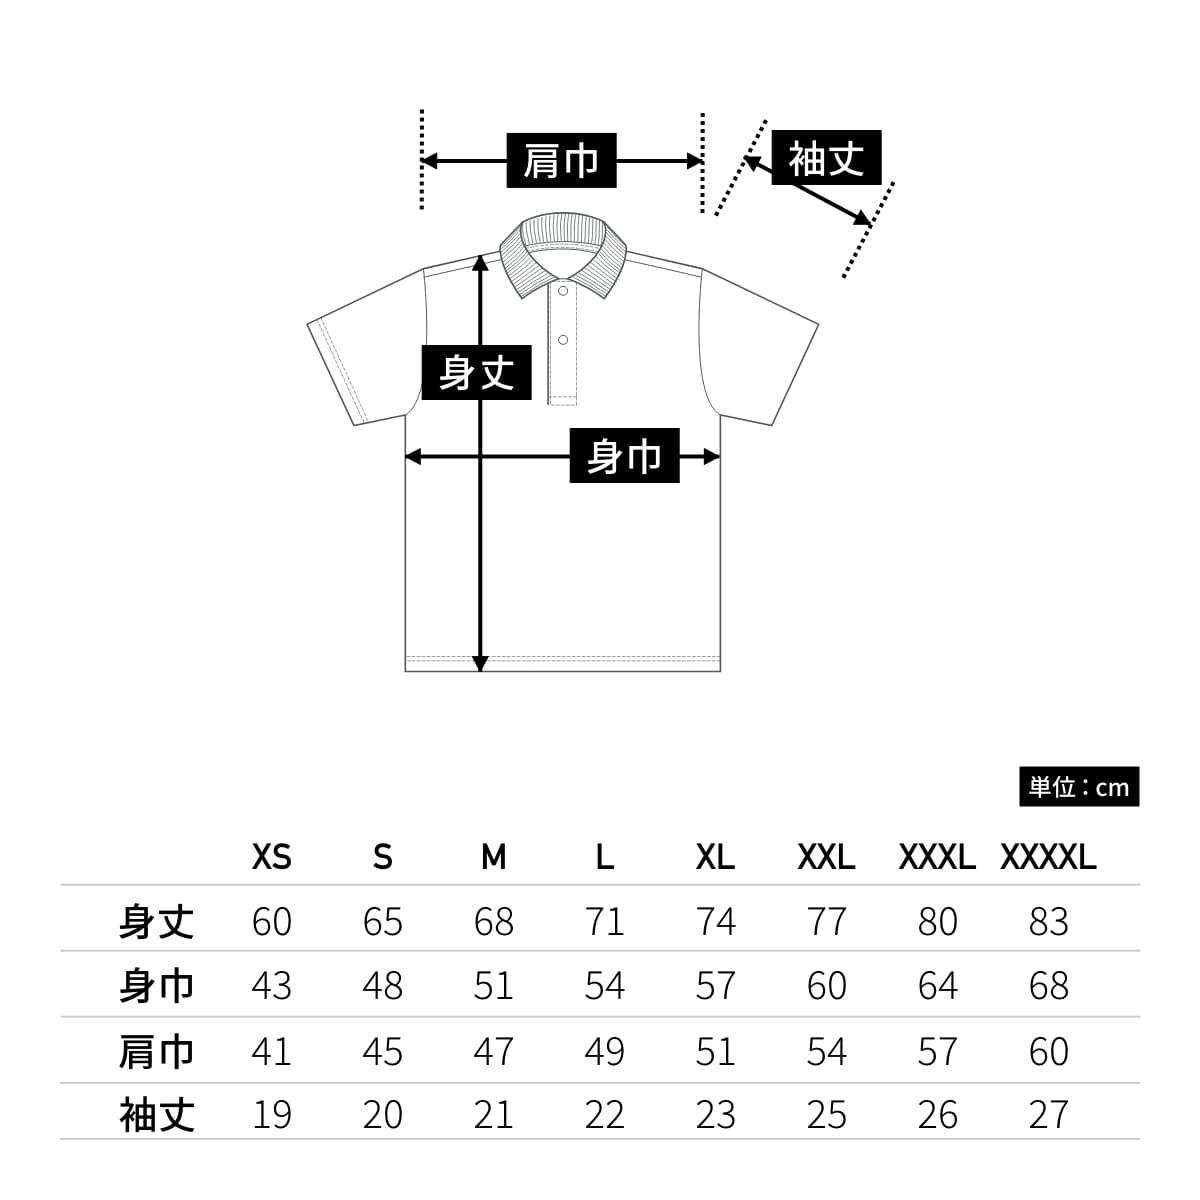 4.1オンス ドライアスレチック ポロシャツ | メンズ | 1枚 | 5910-01 | ブラック/トロピカルピンク